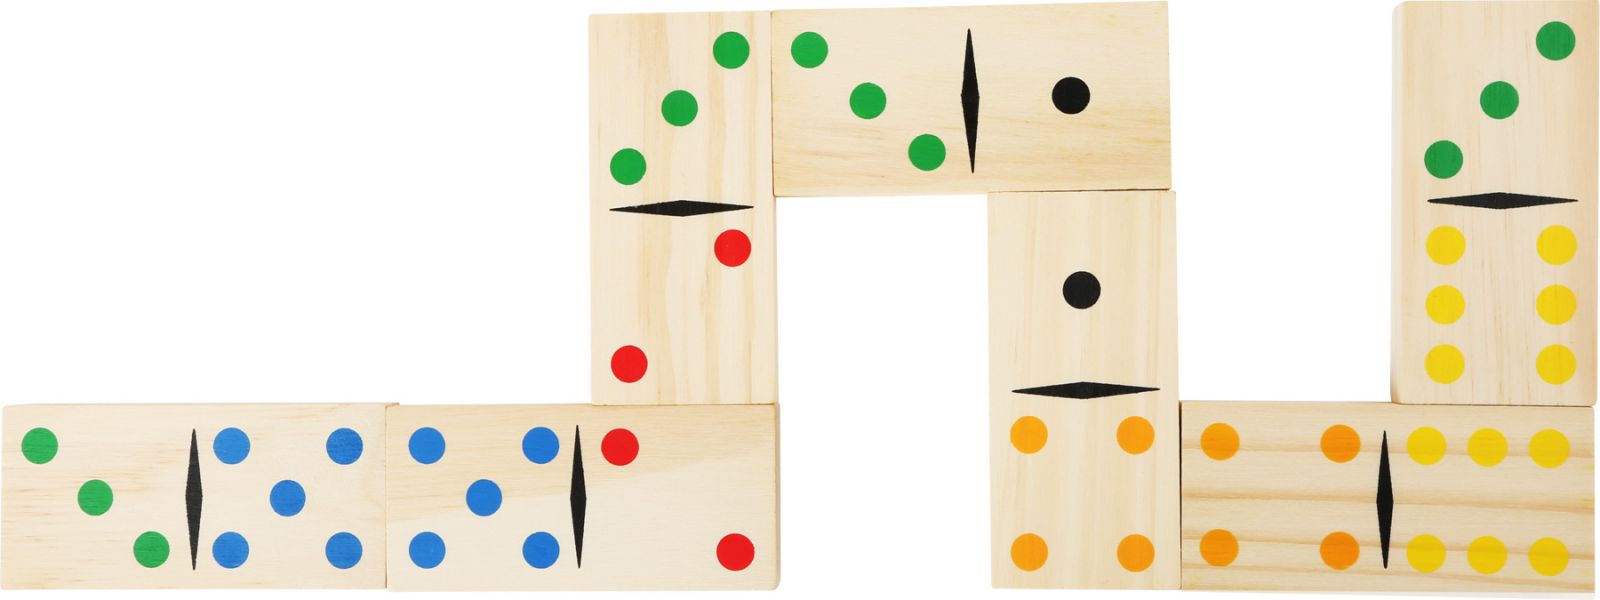 Dřevěné hračky Small Foot Dřevěné hry obří domino Small foot by Legler